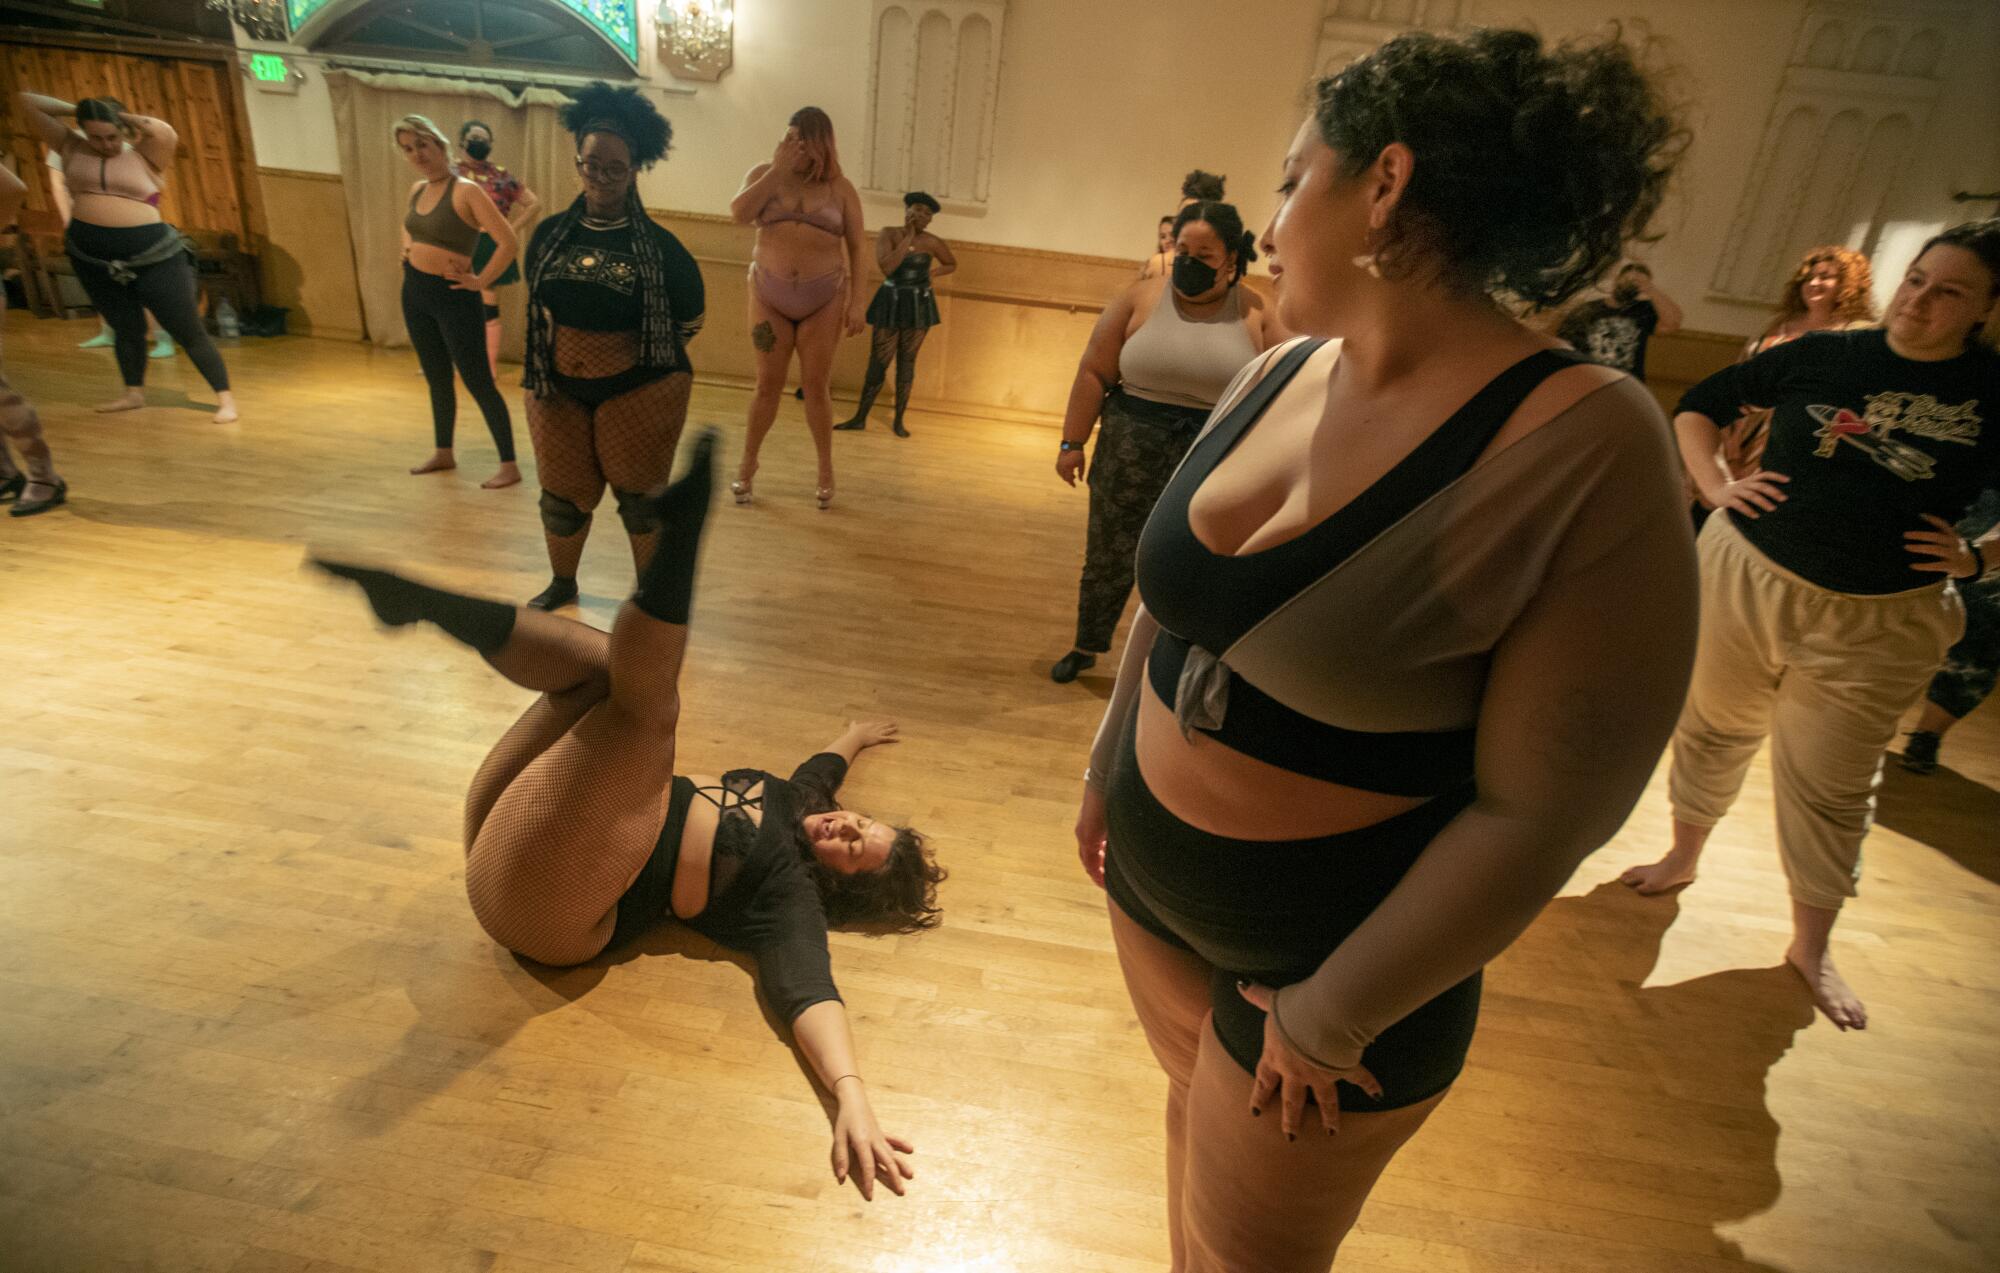 Thick Strip burlesque revue celebrates plus-size beauty - Los